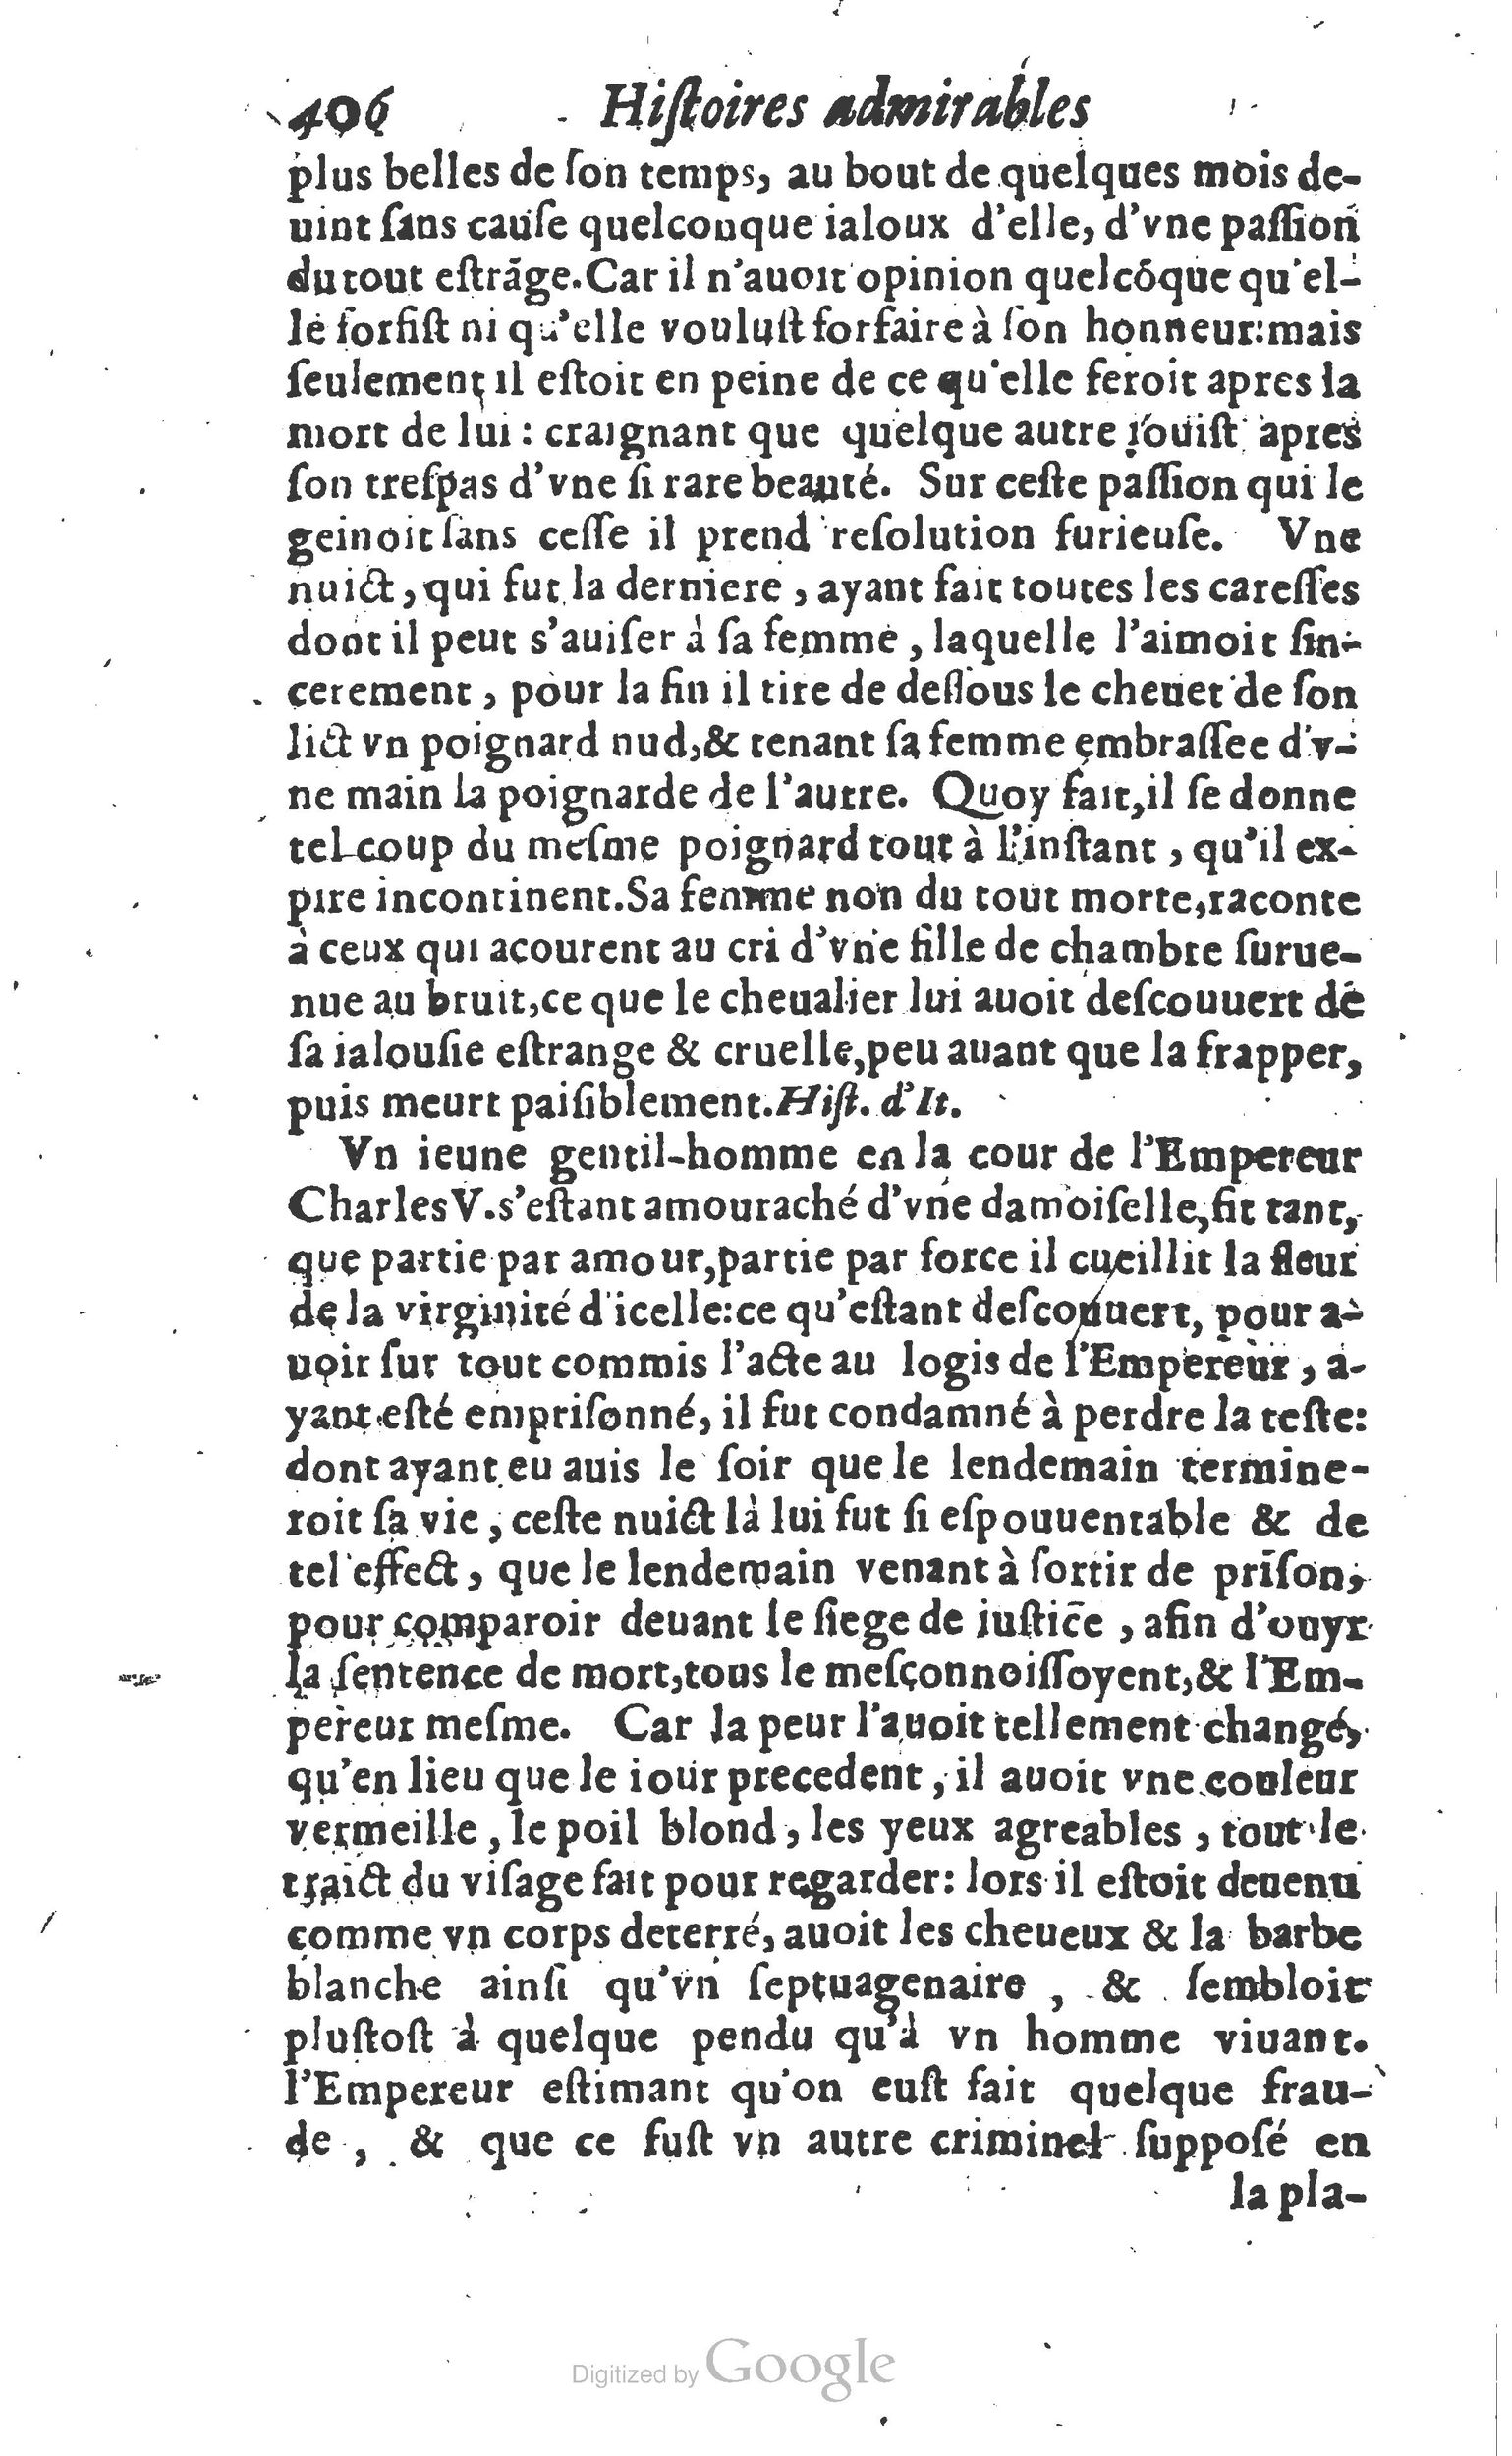 1610 Trésor d’histoires admirables et mémorables de nostre temps Marceau Princeton_Page_0427.jpg